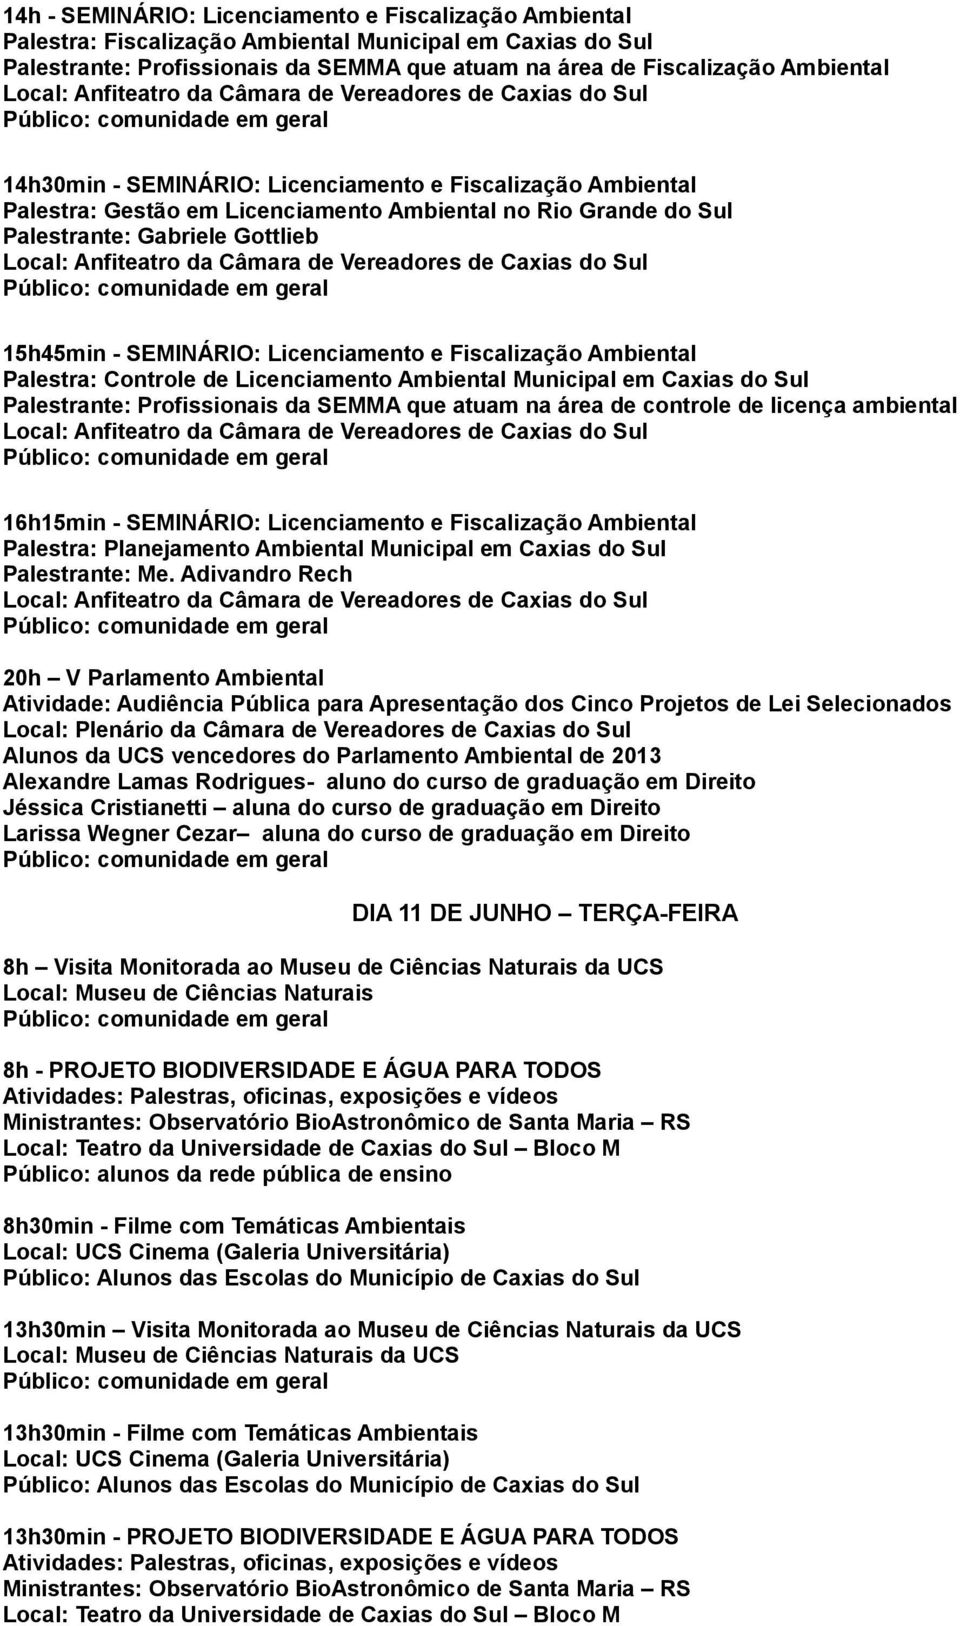 Fiscalização Ambiental Palestra: Controle de Licenciamento Ambiental Municipal em Caxias do Sul Palestrante: Profissionais da SEMMA que atuam na área de controle de licença ambiental 16h15min -